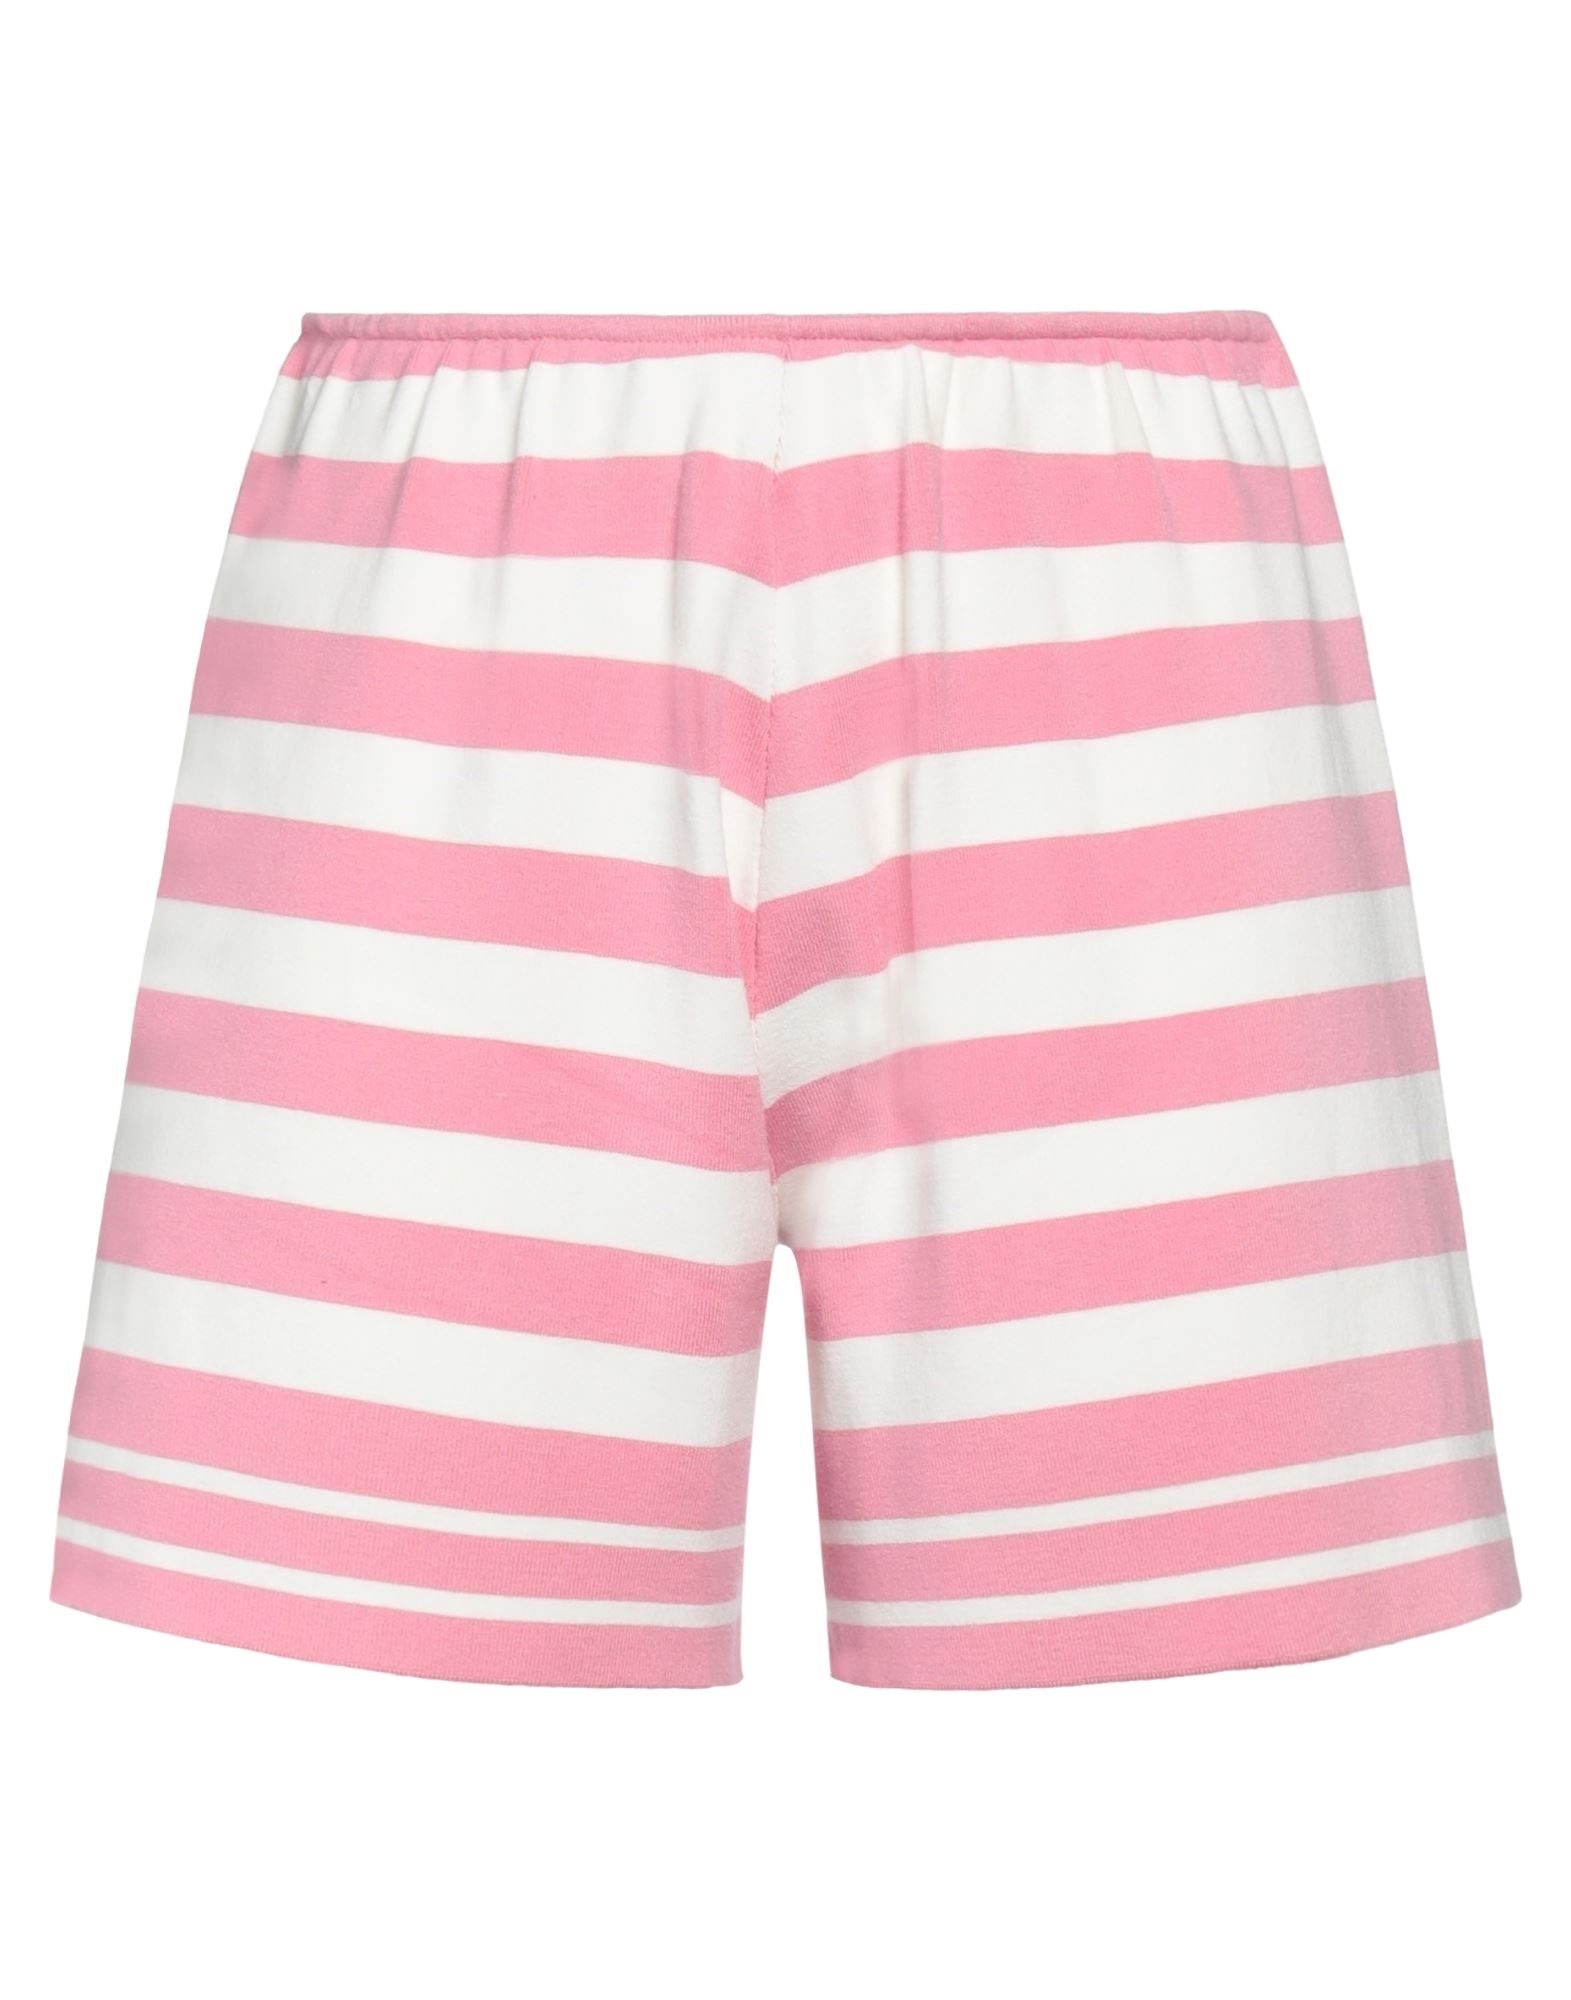 Kaos Woman Shorts & Bermuda Shorts Pink Size S Viscose, Polyester